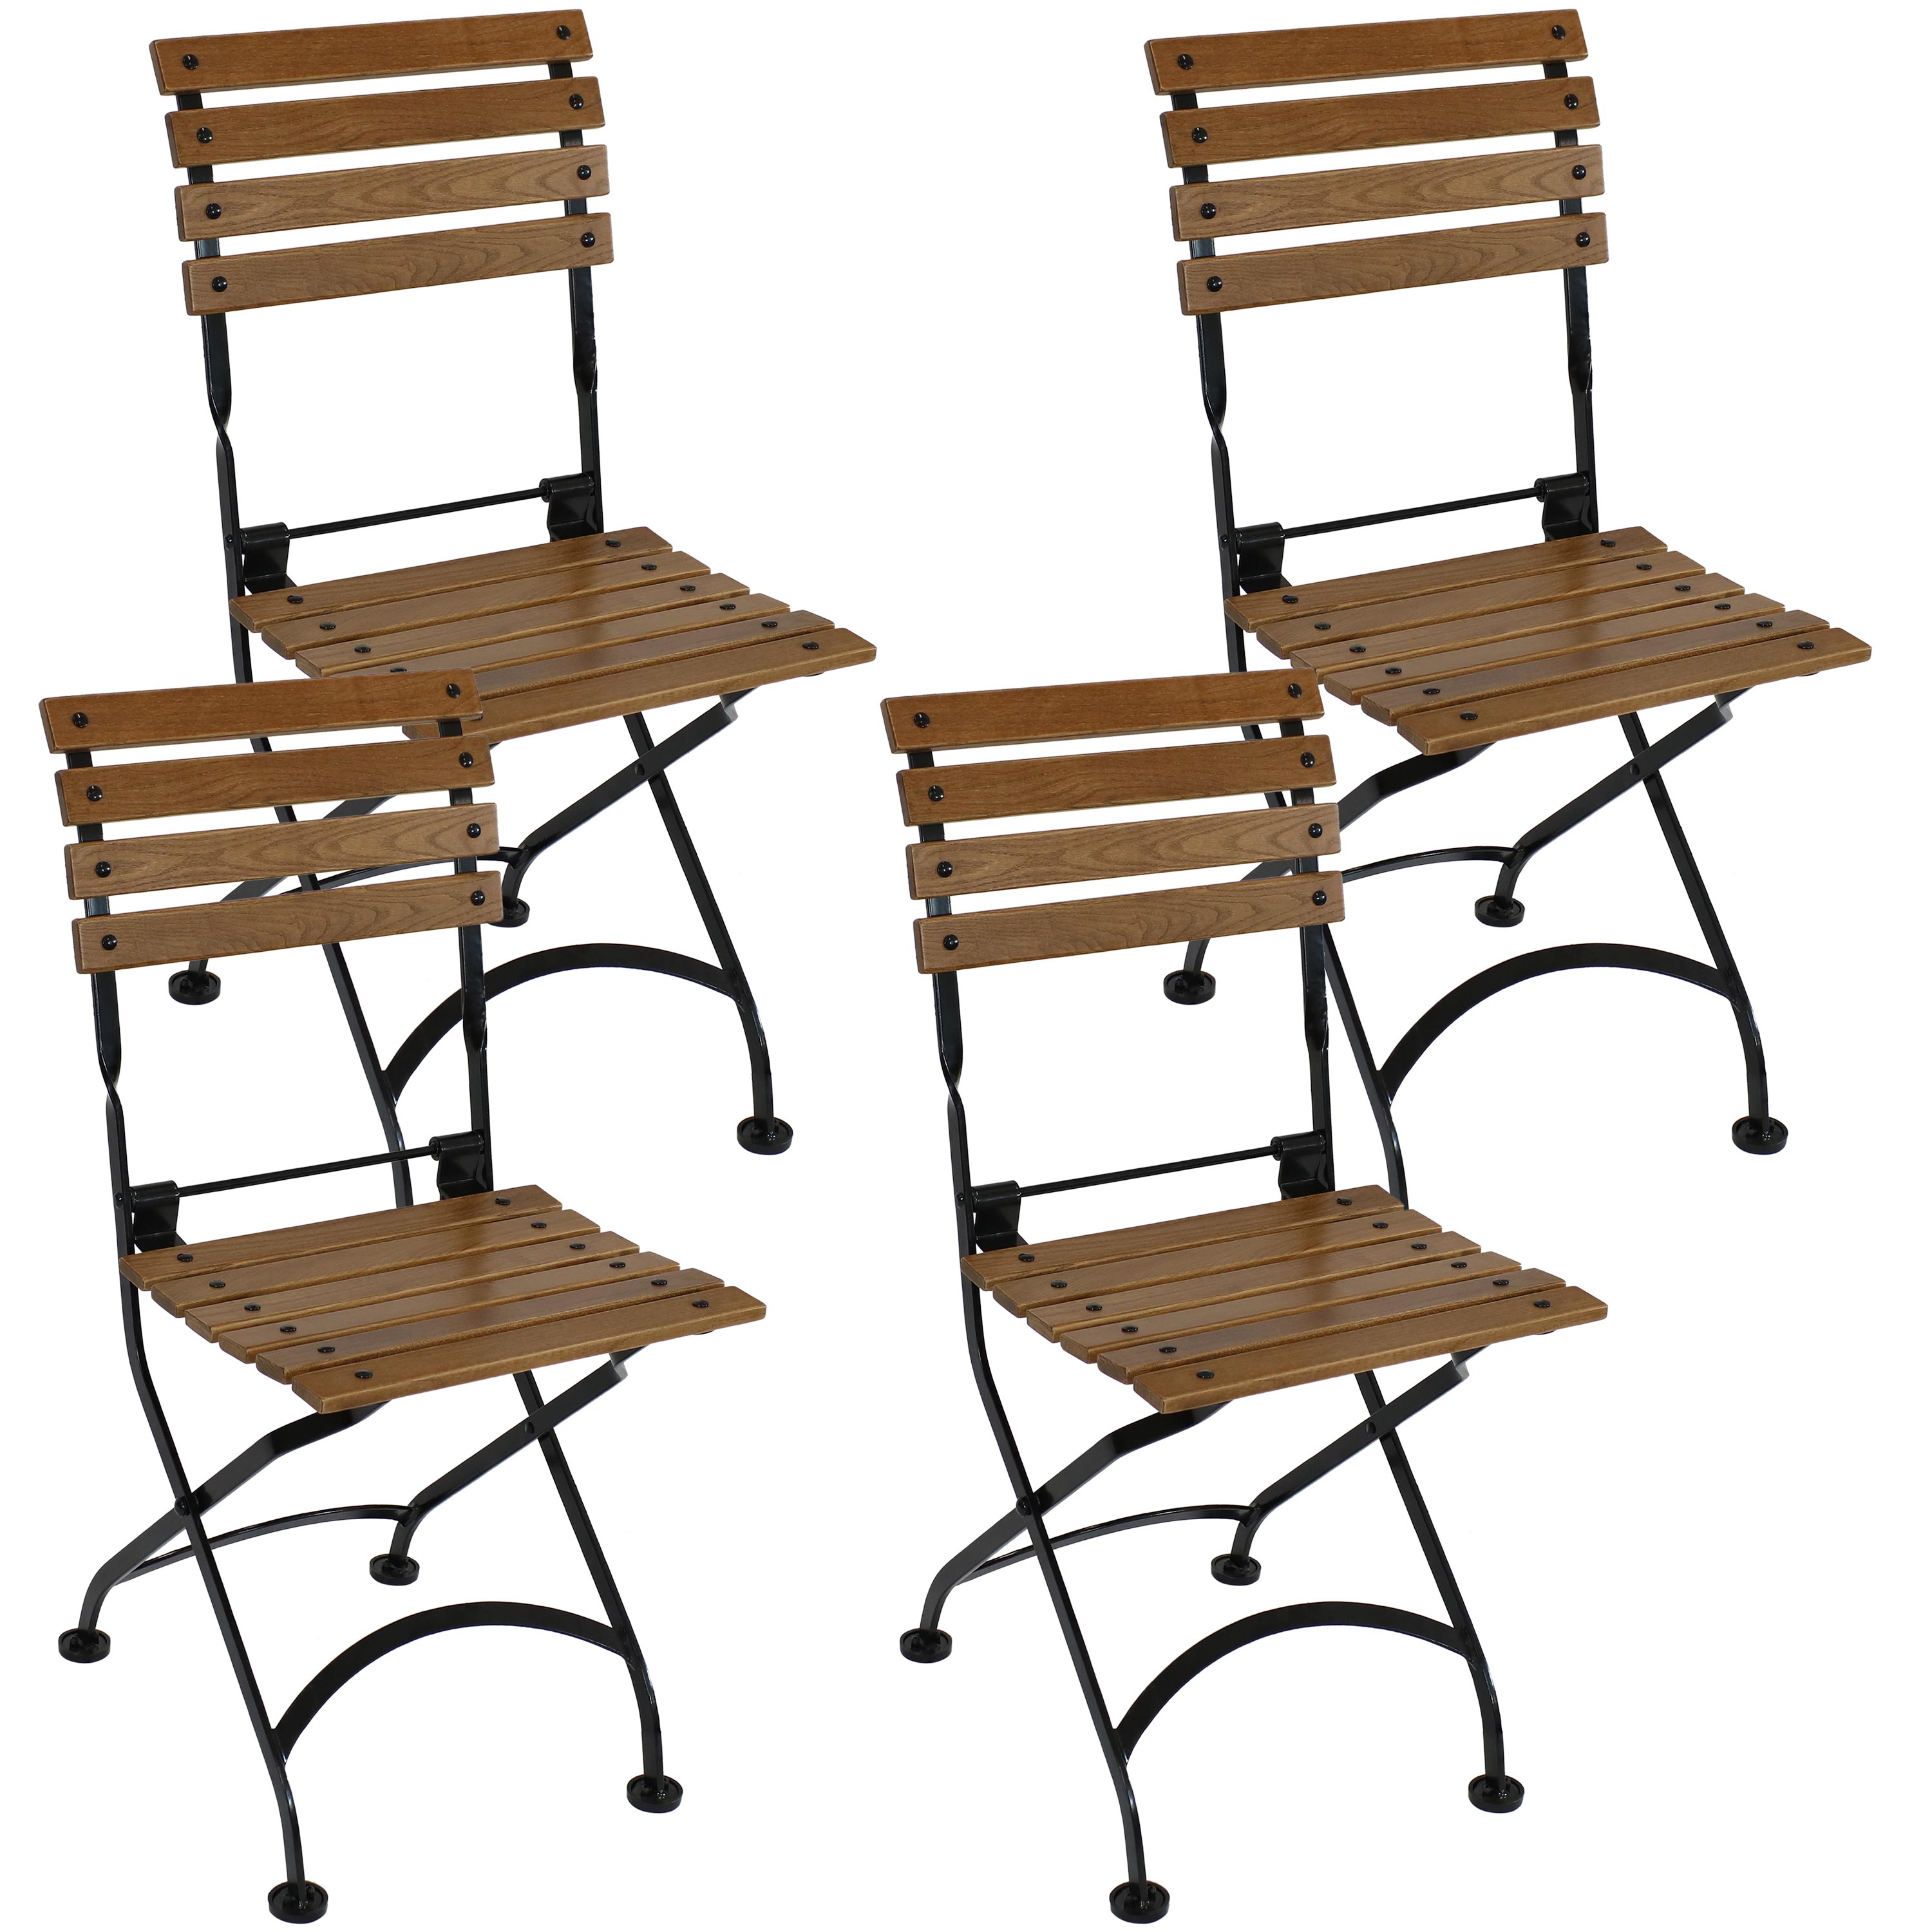 Sunnydaze European Chestnut Wooden Folding Bistro Side Chair - Set of 4